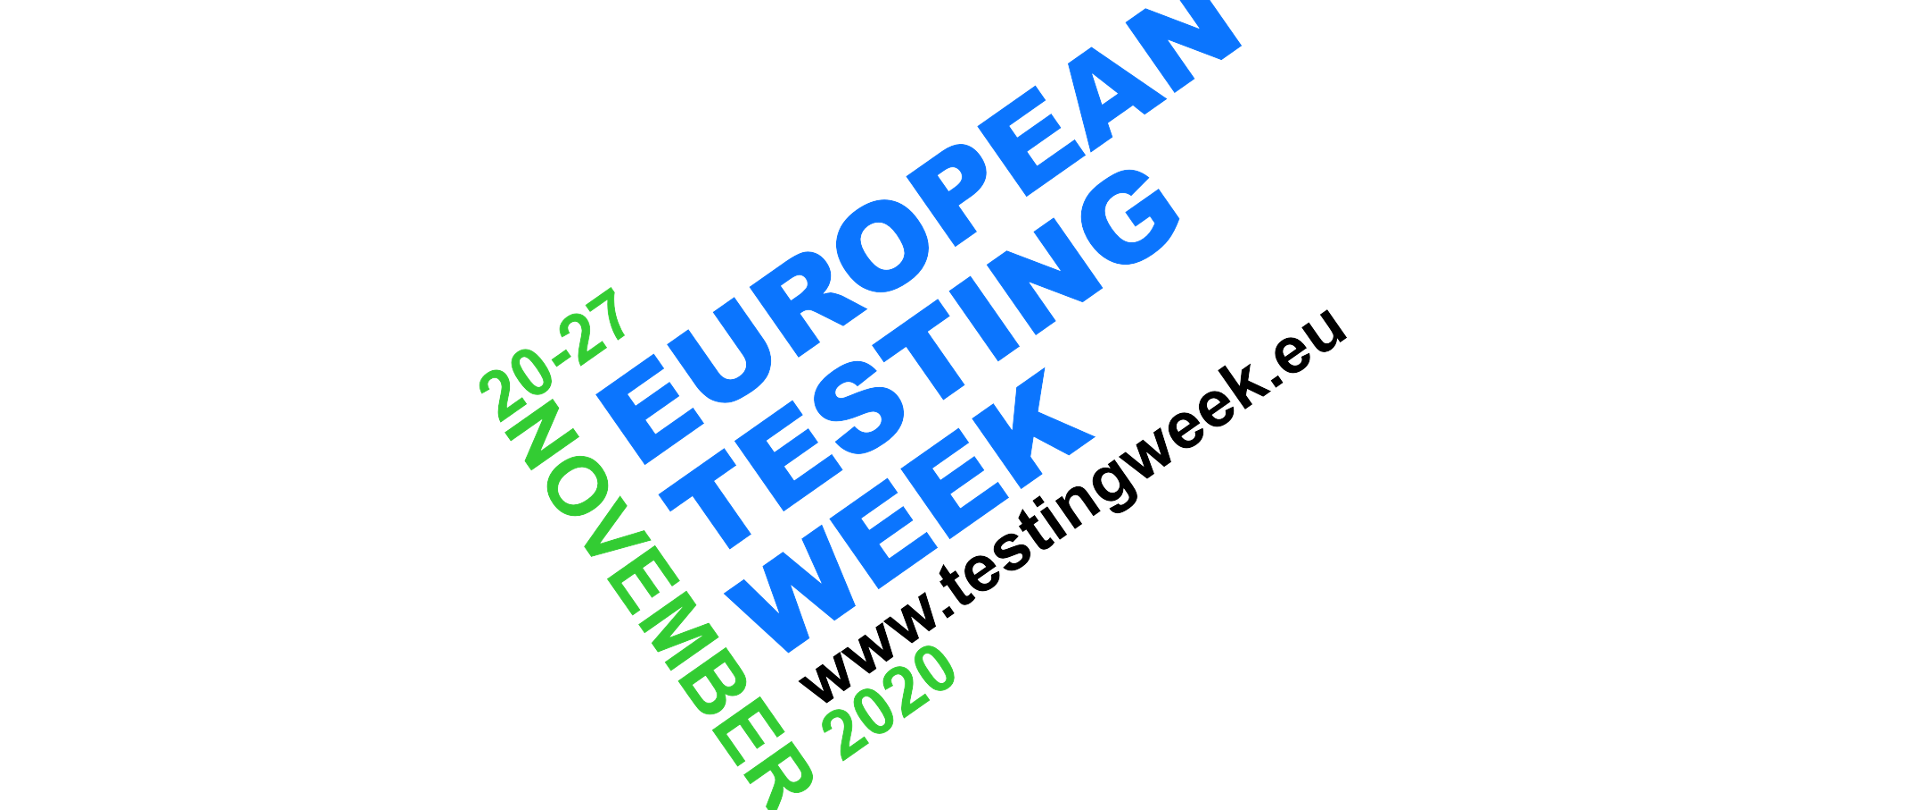 niebiesko-zielono-czarne napisy na białym tle pt.” European Testing Week, 20- 27 november 2020” Podany jest również adres strony internetowej: www.testingweek.eu 